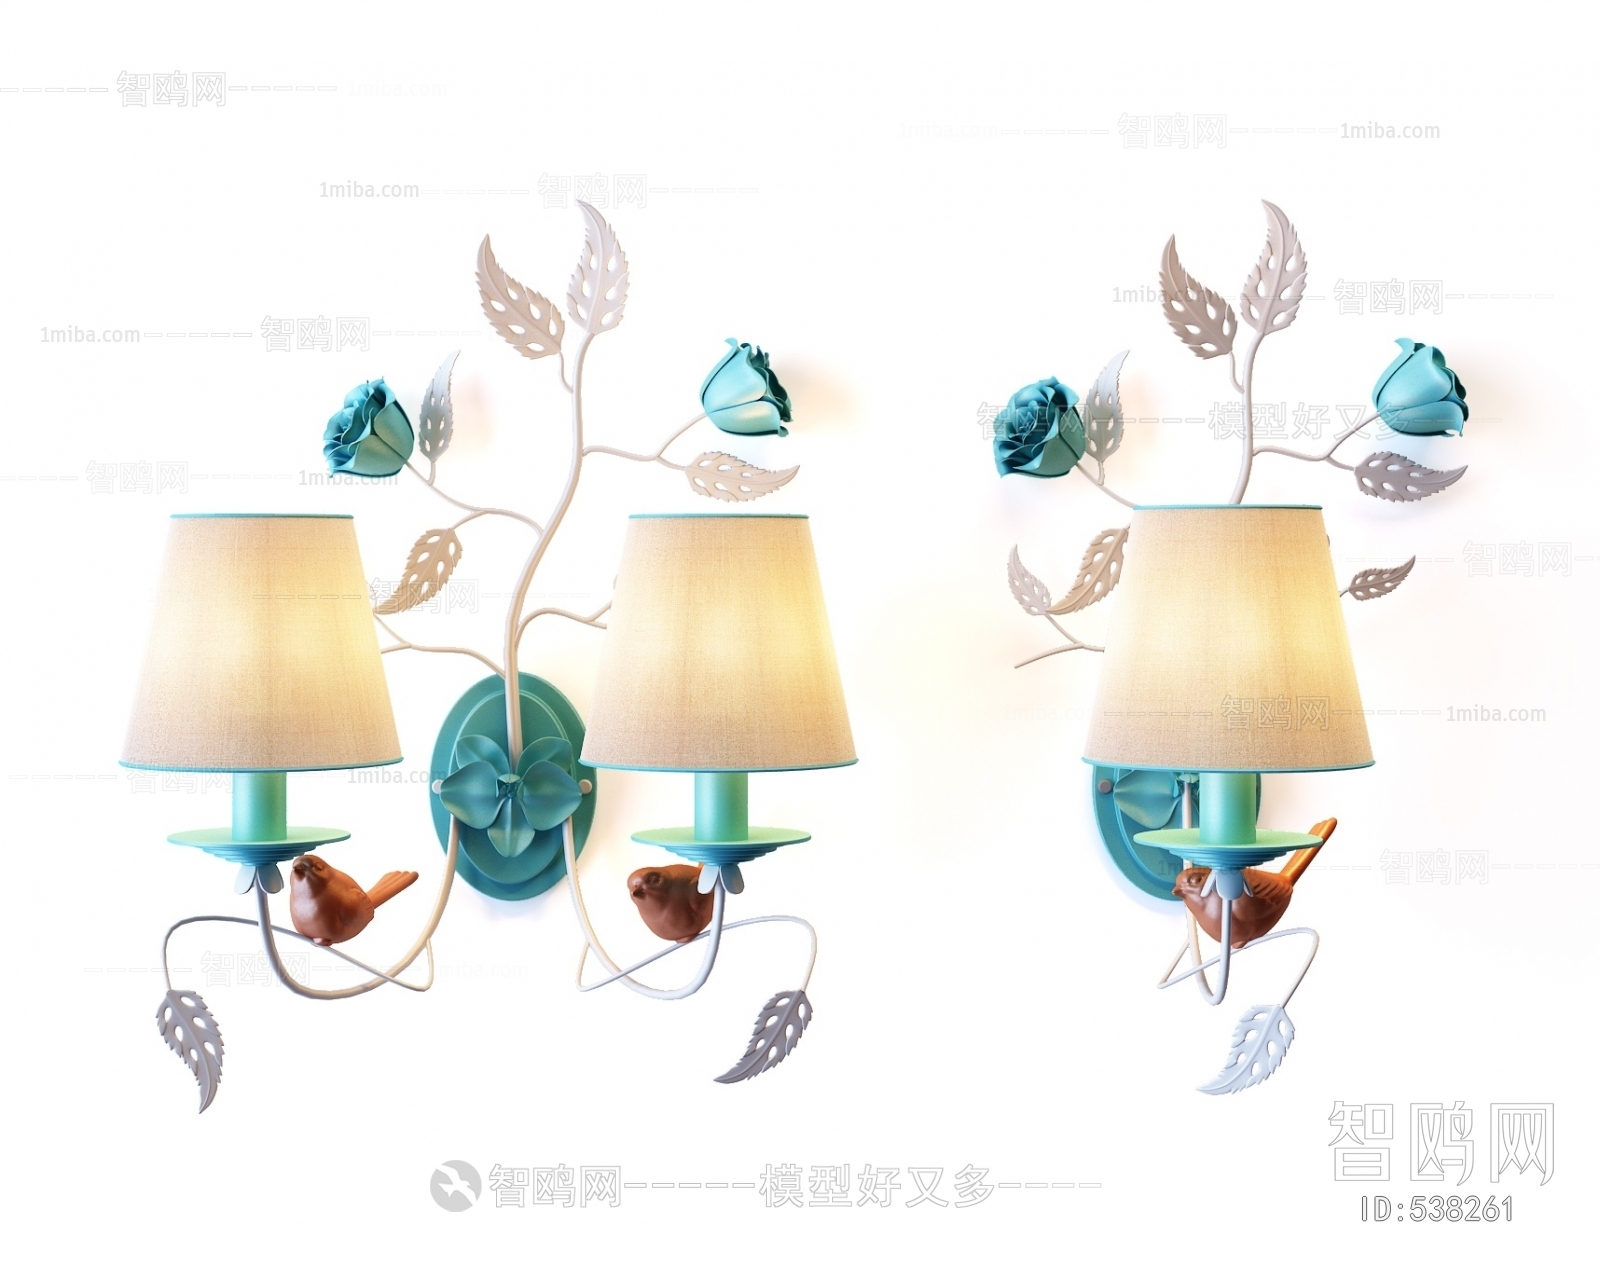 Idyllic Style Wall Lamp